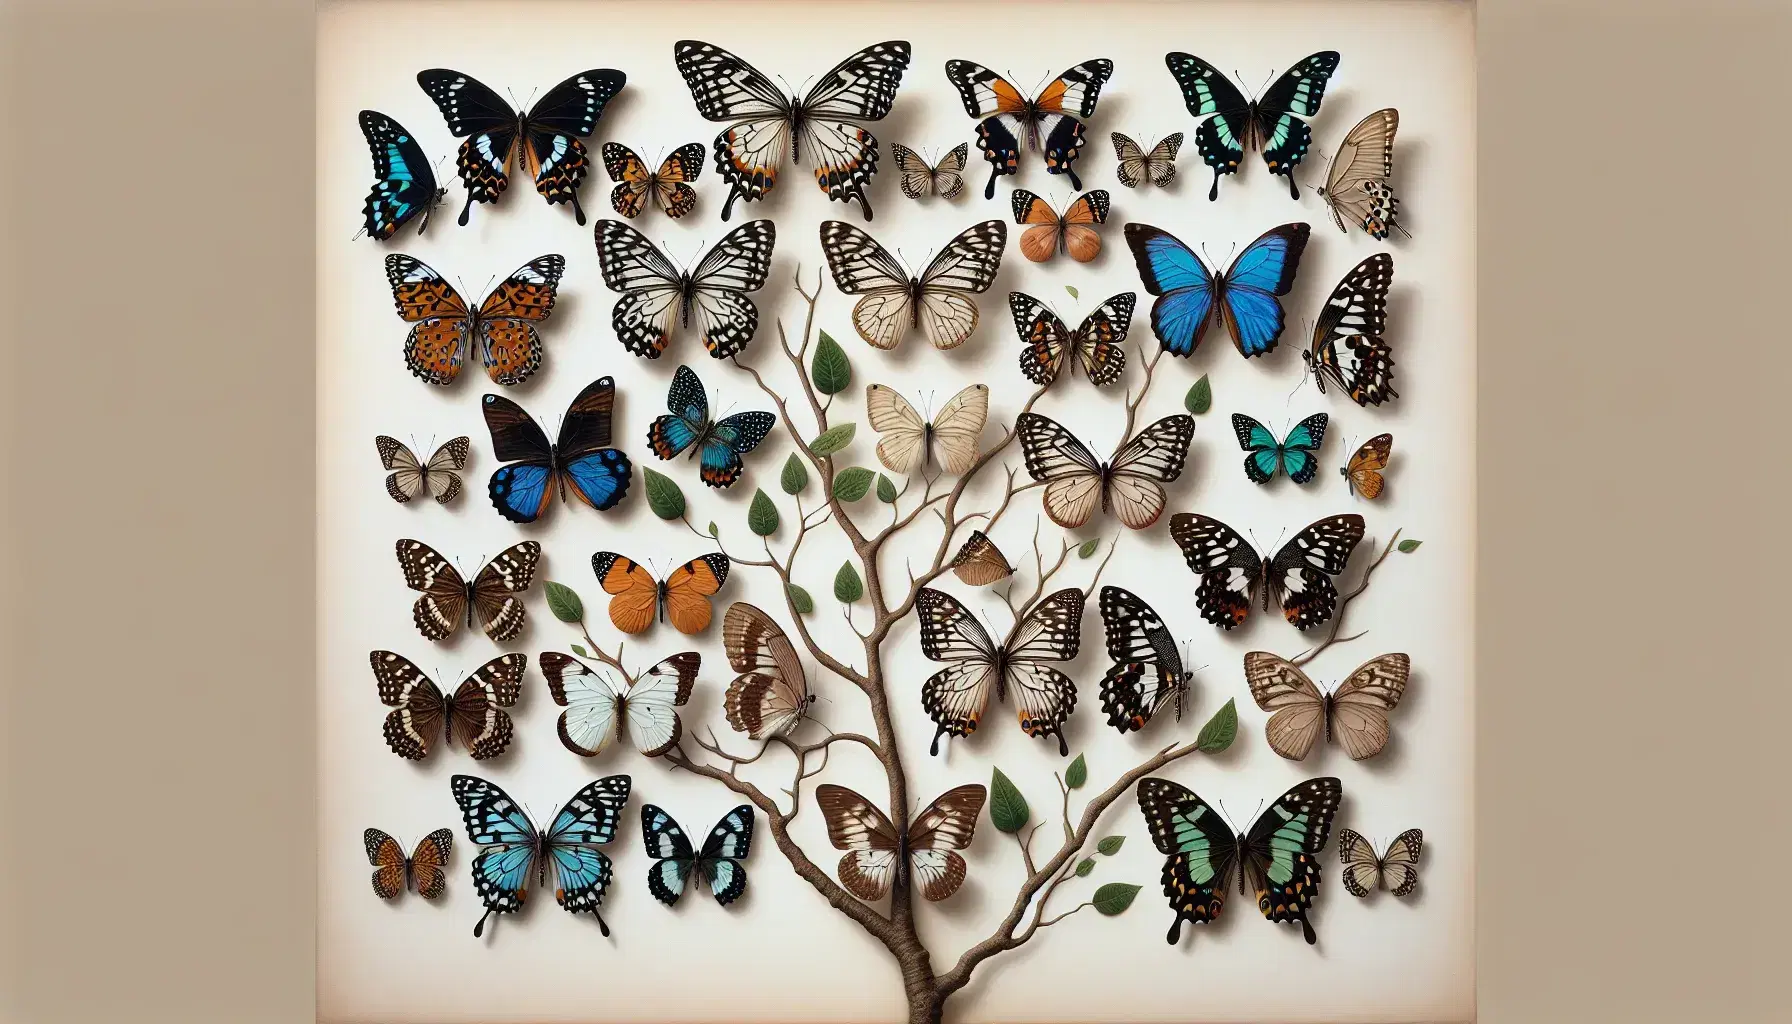 Colección de mariposas con alas desplegadas mostrando variedad de patrones y colores sobre fondo claro, con una rama y mariposa camuflada.